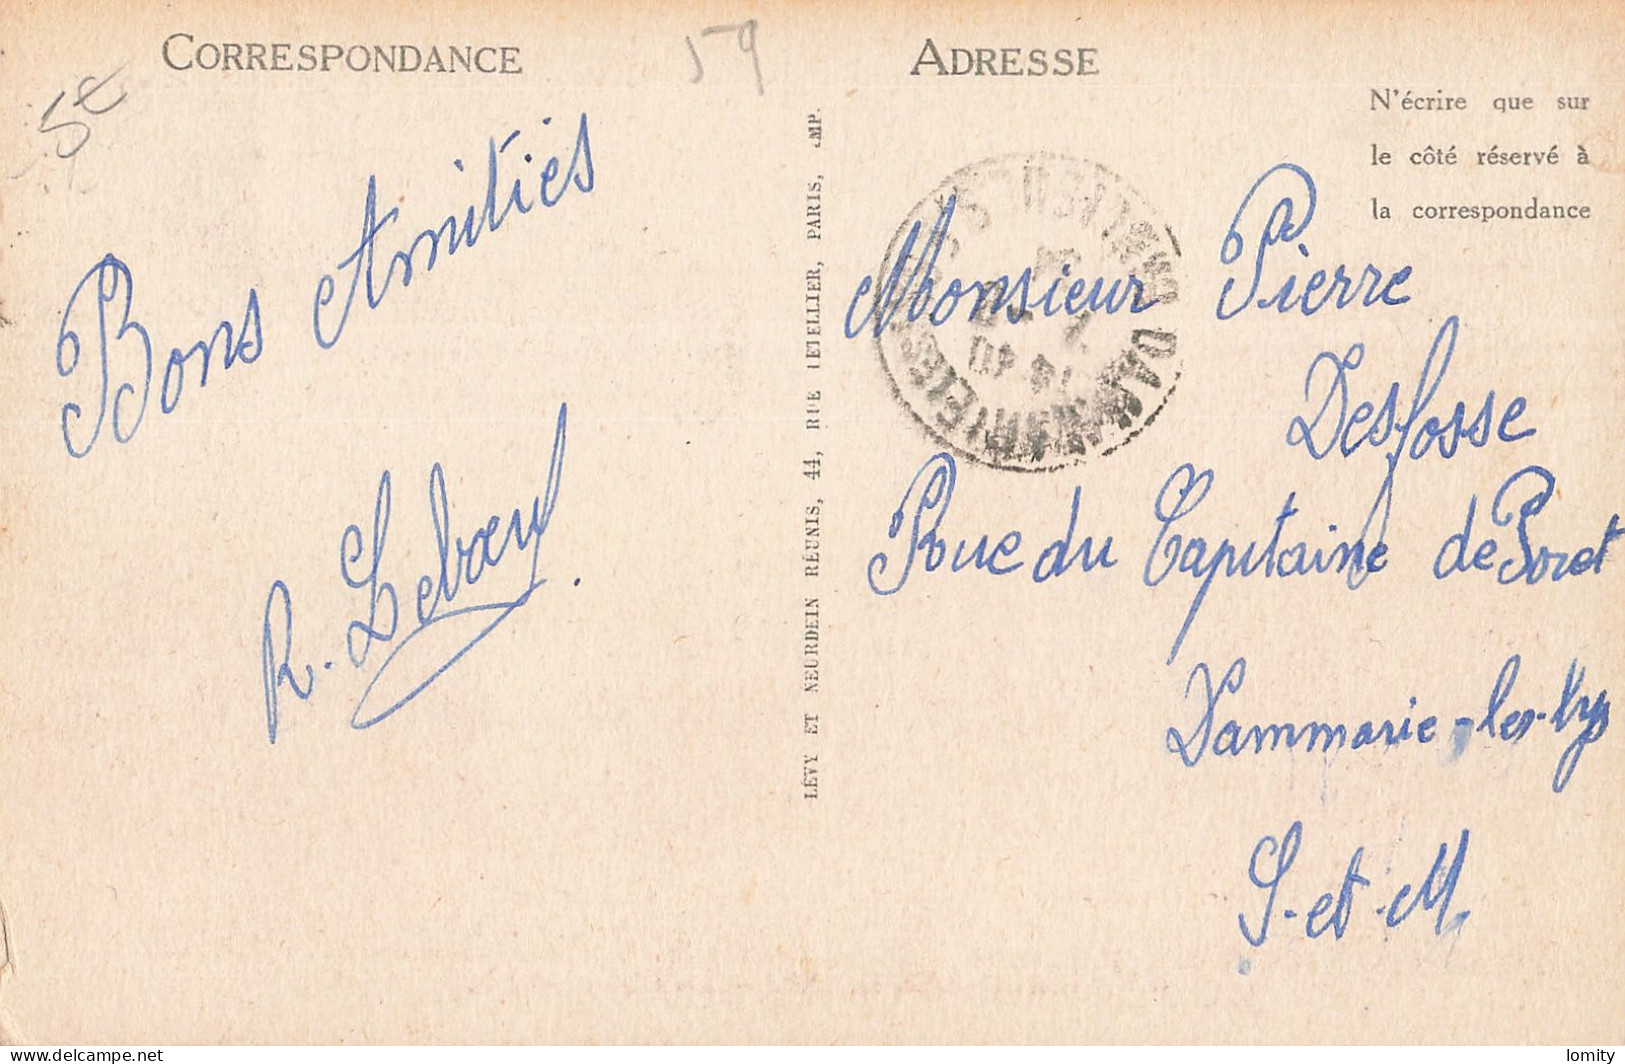 Destockage lot de 13 cartes postales CPA du Nord Dunkerque Malo les Bains Lille Armentieres